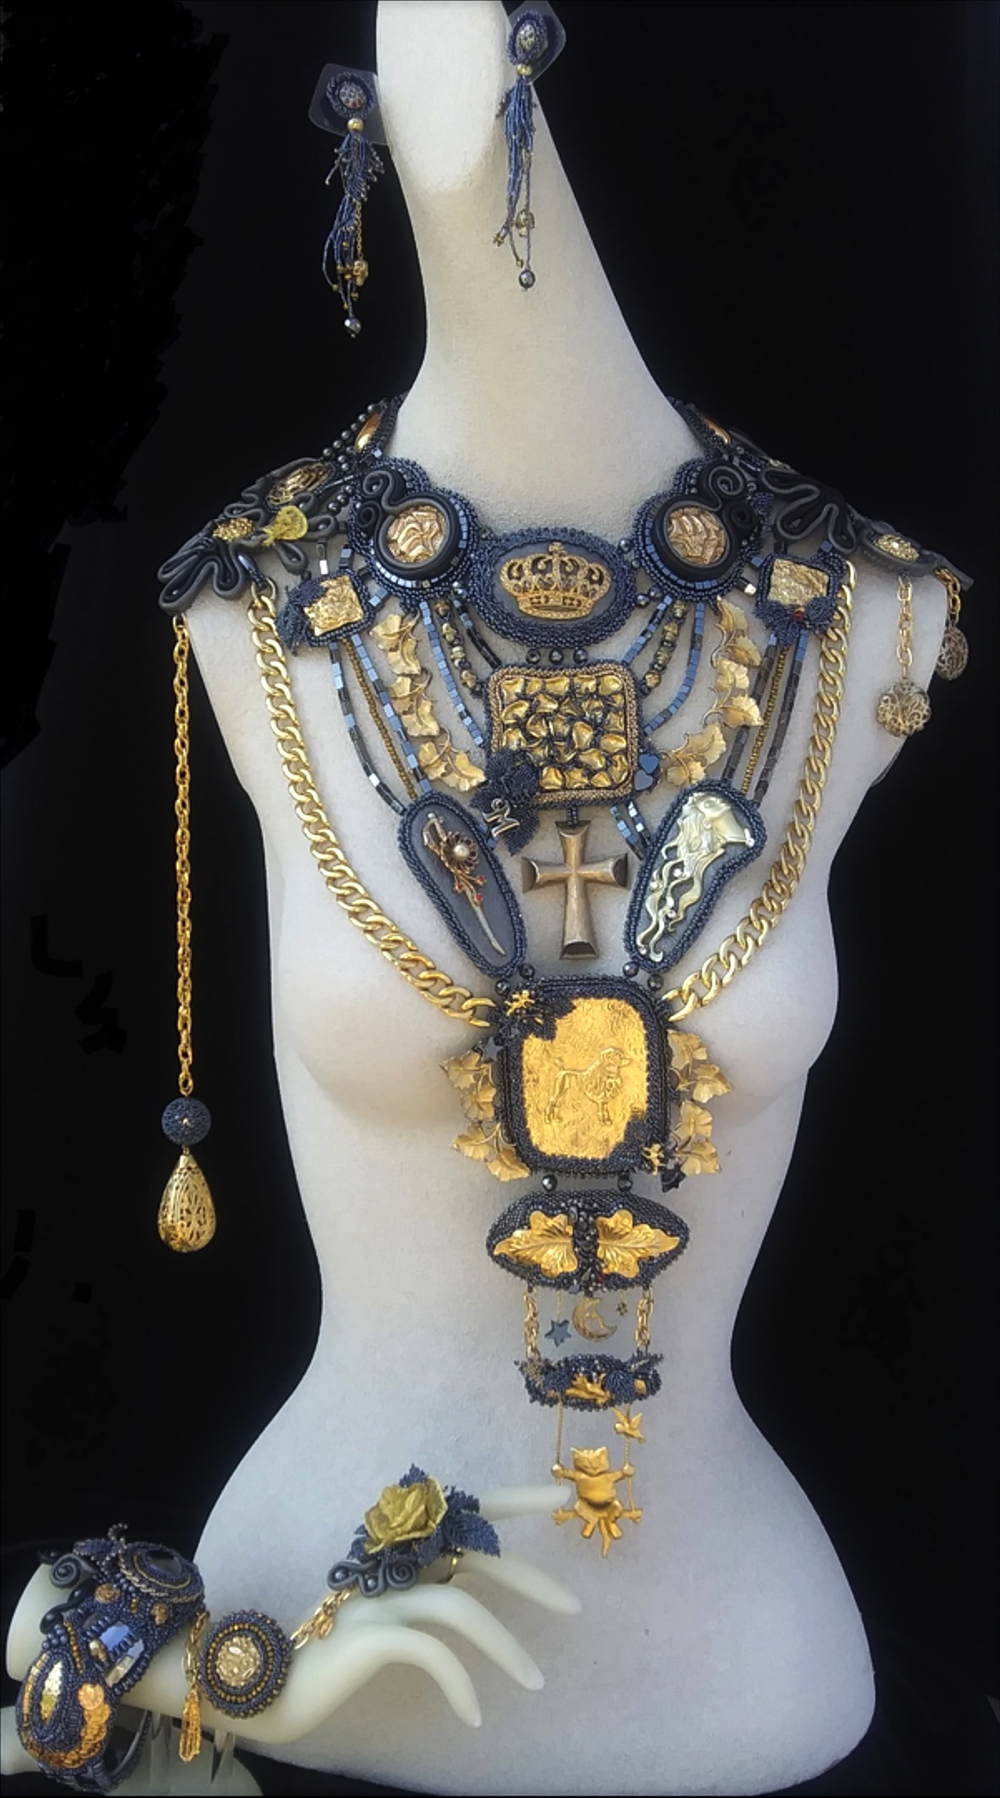 "The Master And Margarita" inspired jewelry by Tatiana Van Iten